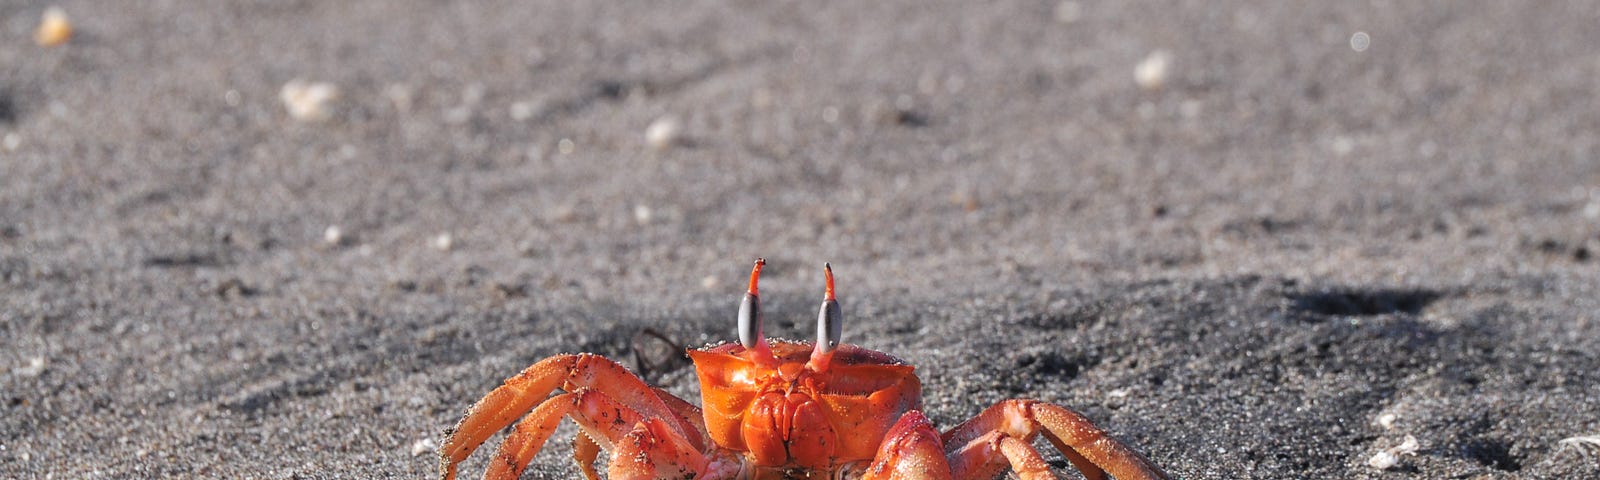 An orange crab on a grey, sandy beach